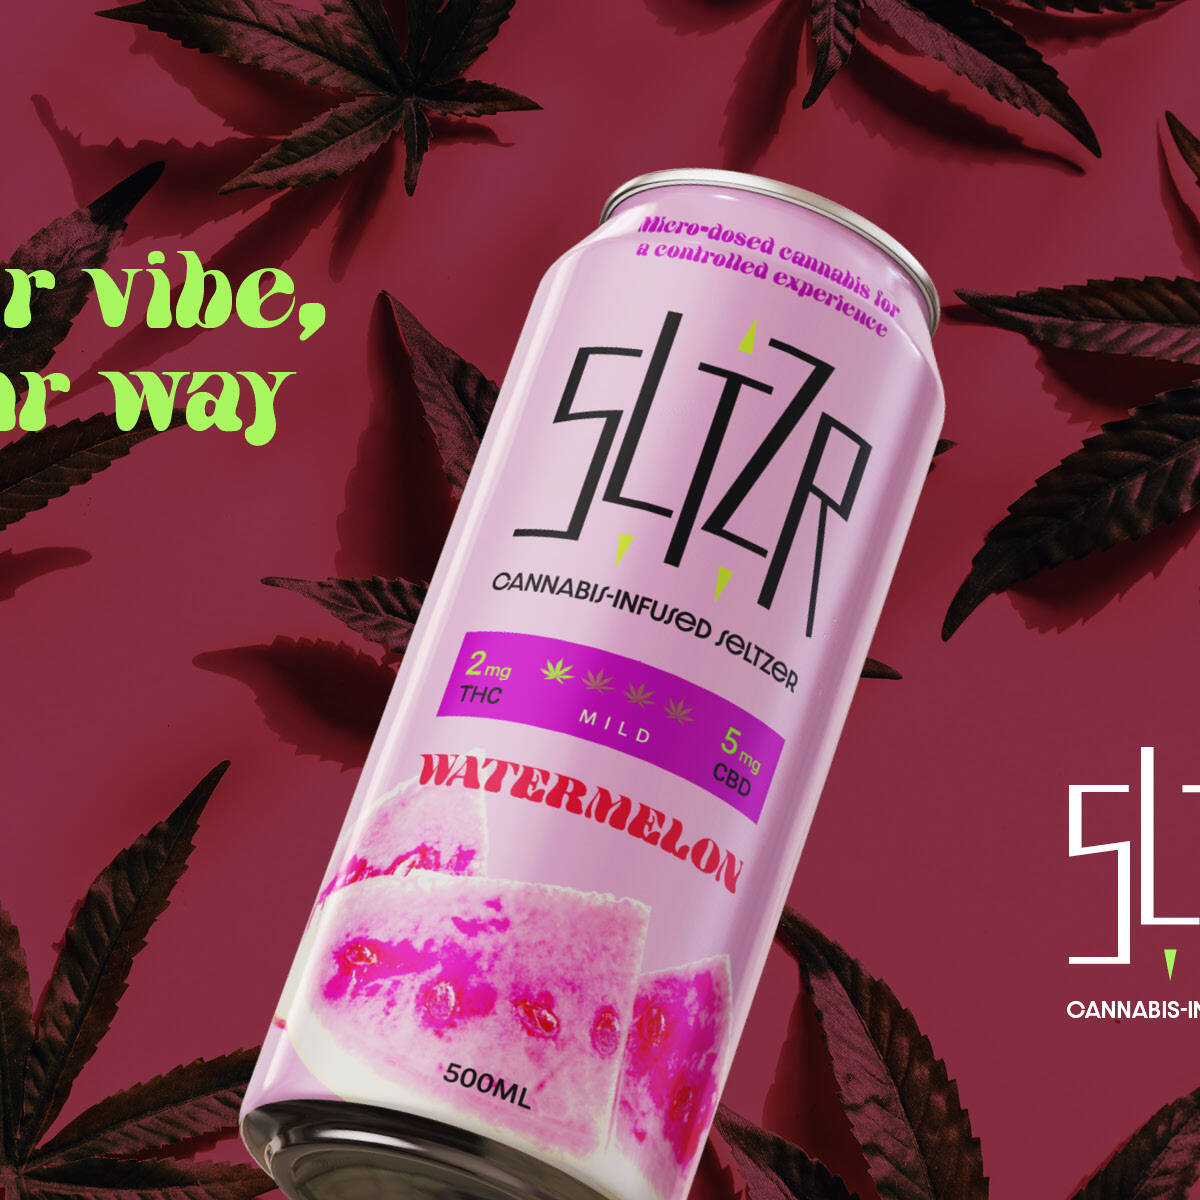 sltzr-ontario-toronto-graphic-brand-design-cannabis-seltzer-beverage